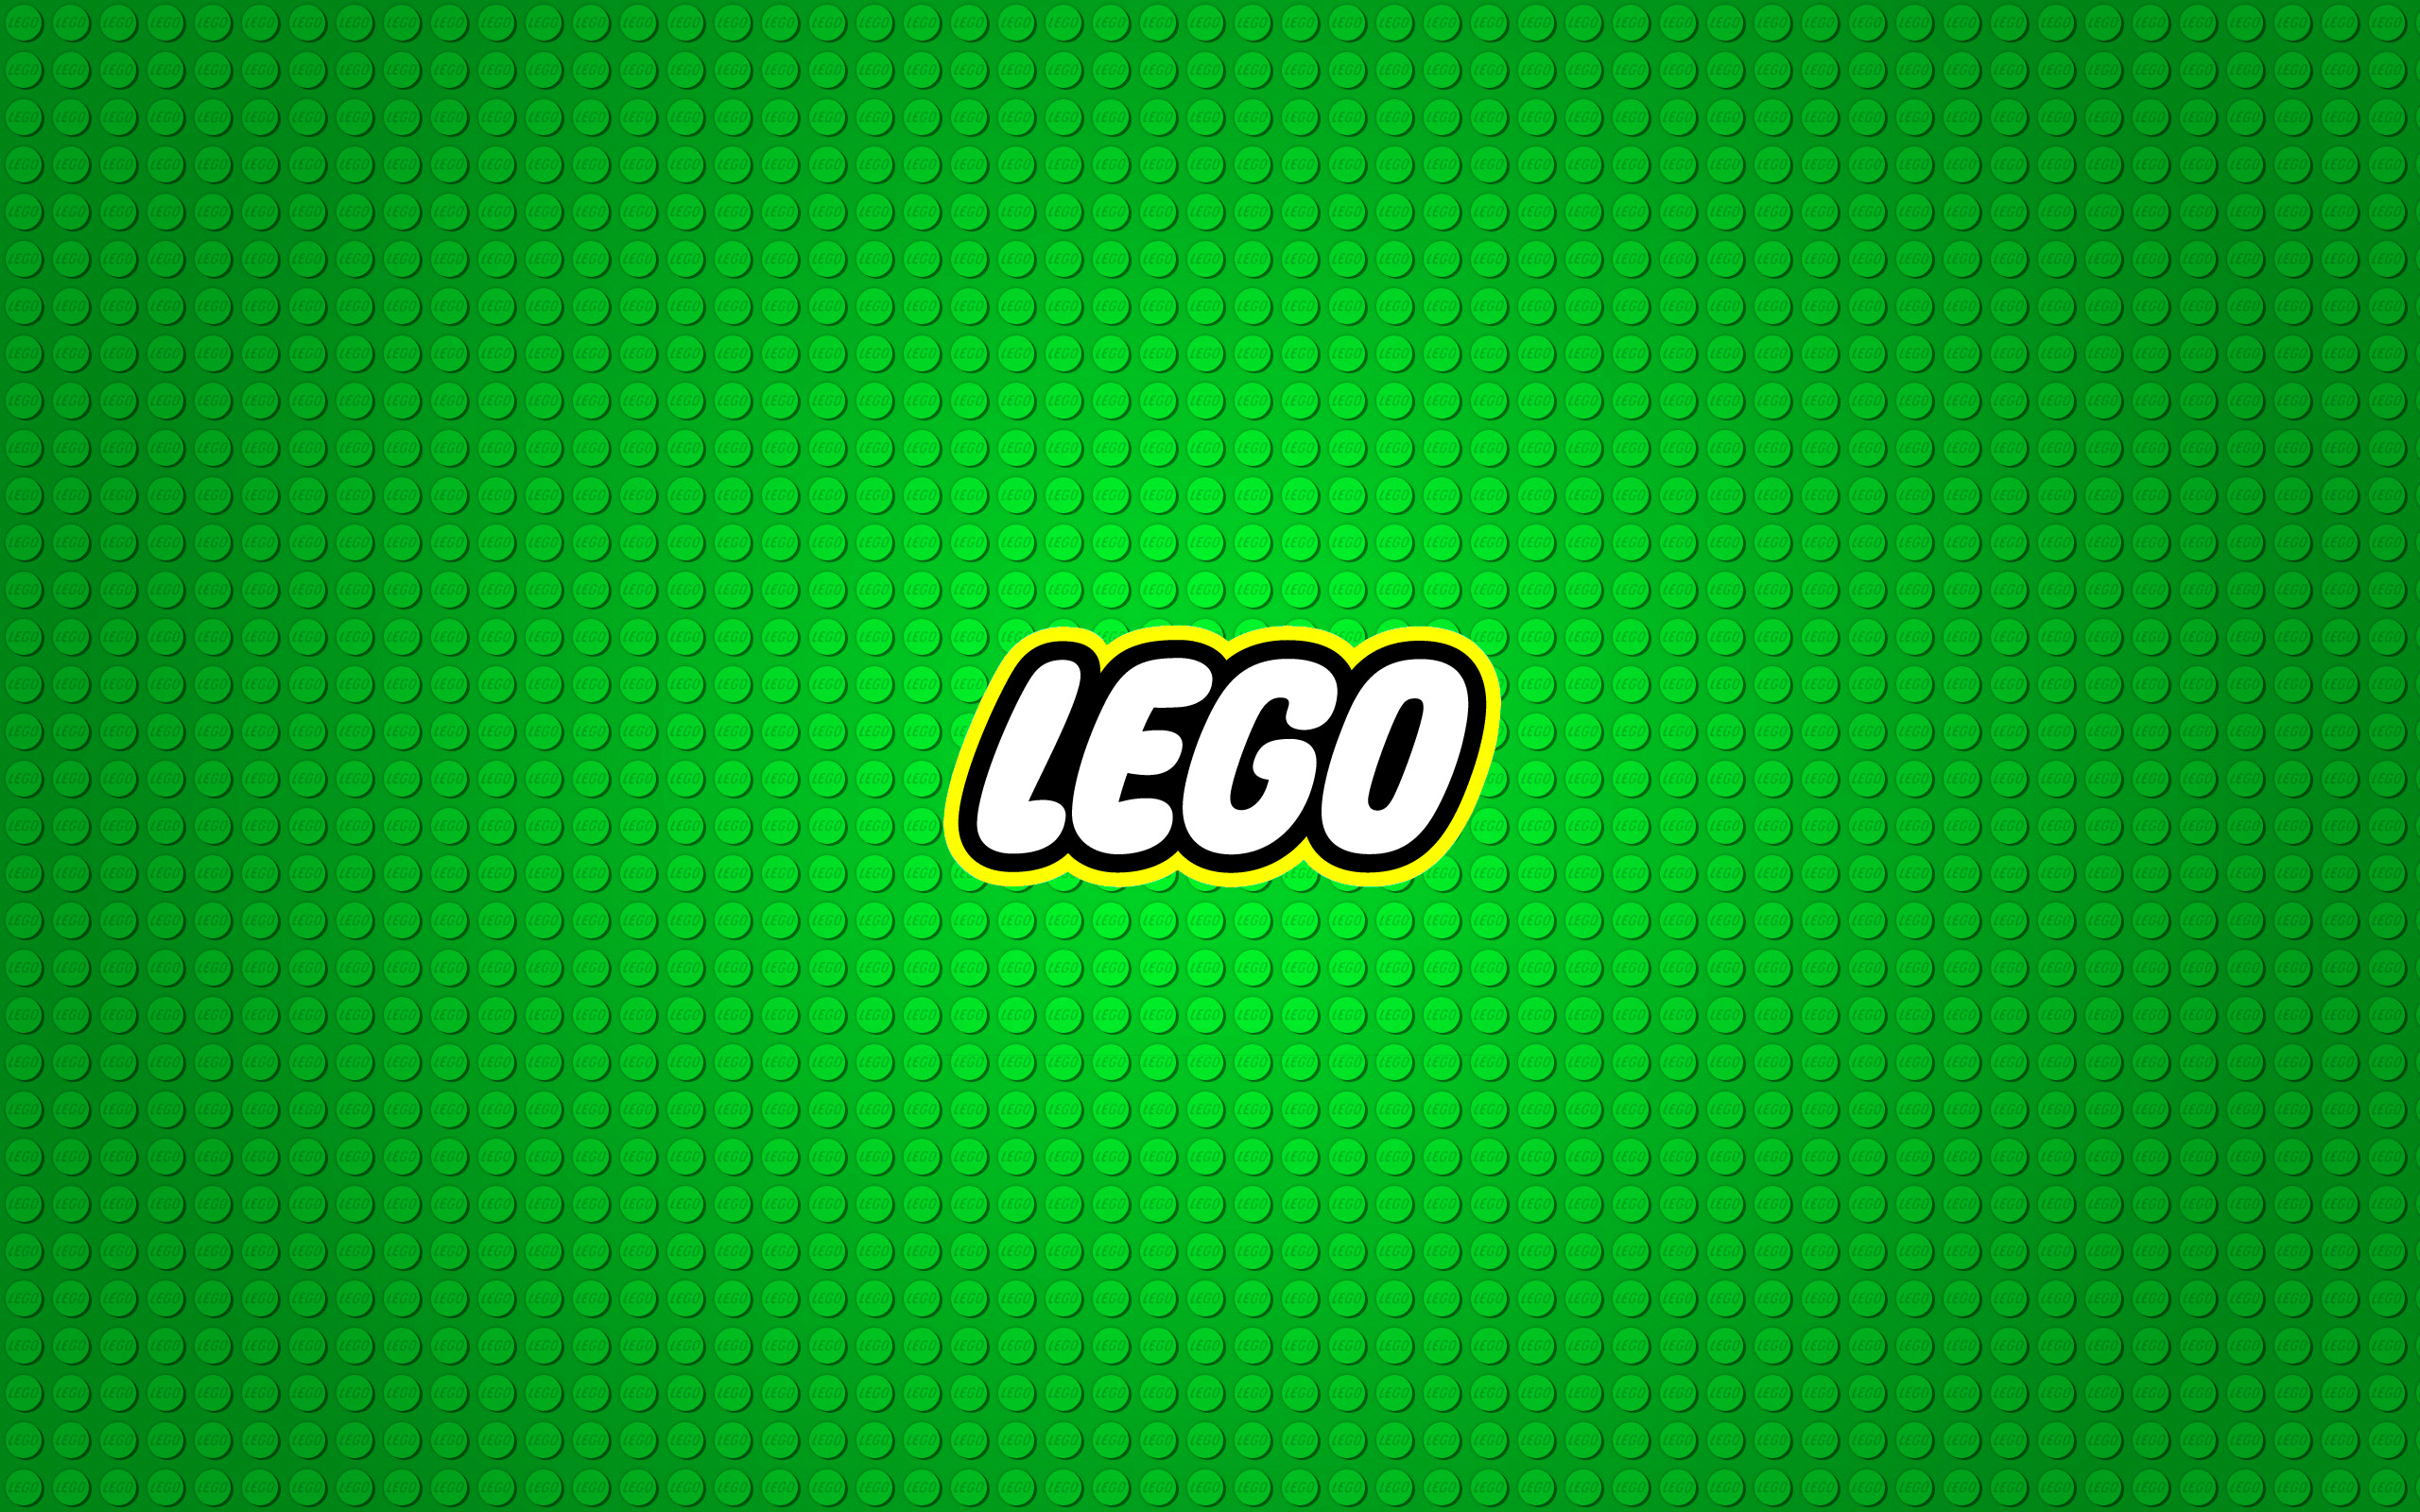 Hình nền Lego xanh 2560x1600 47312 2560x1600 px